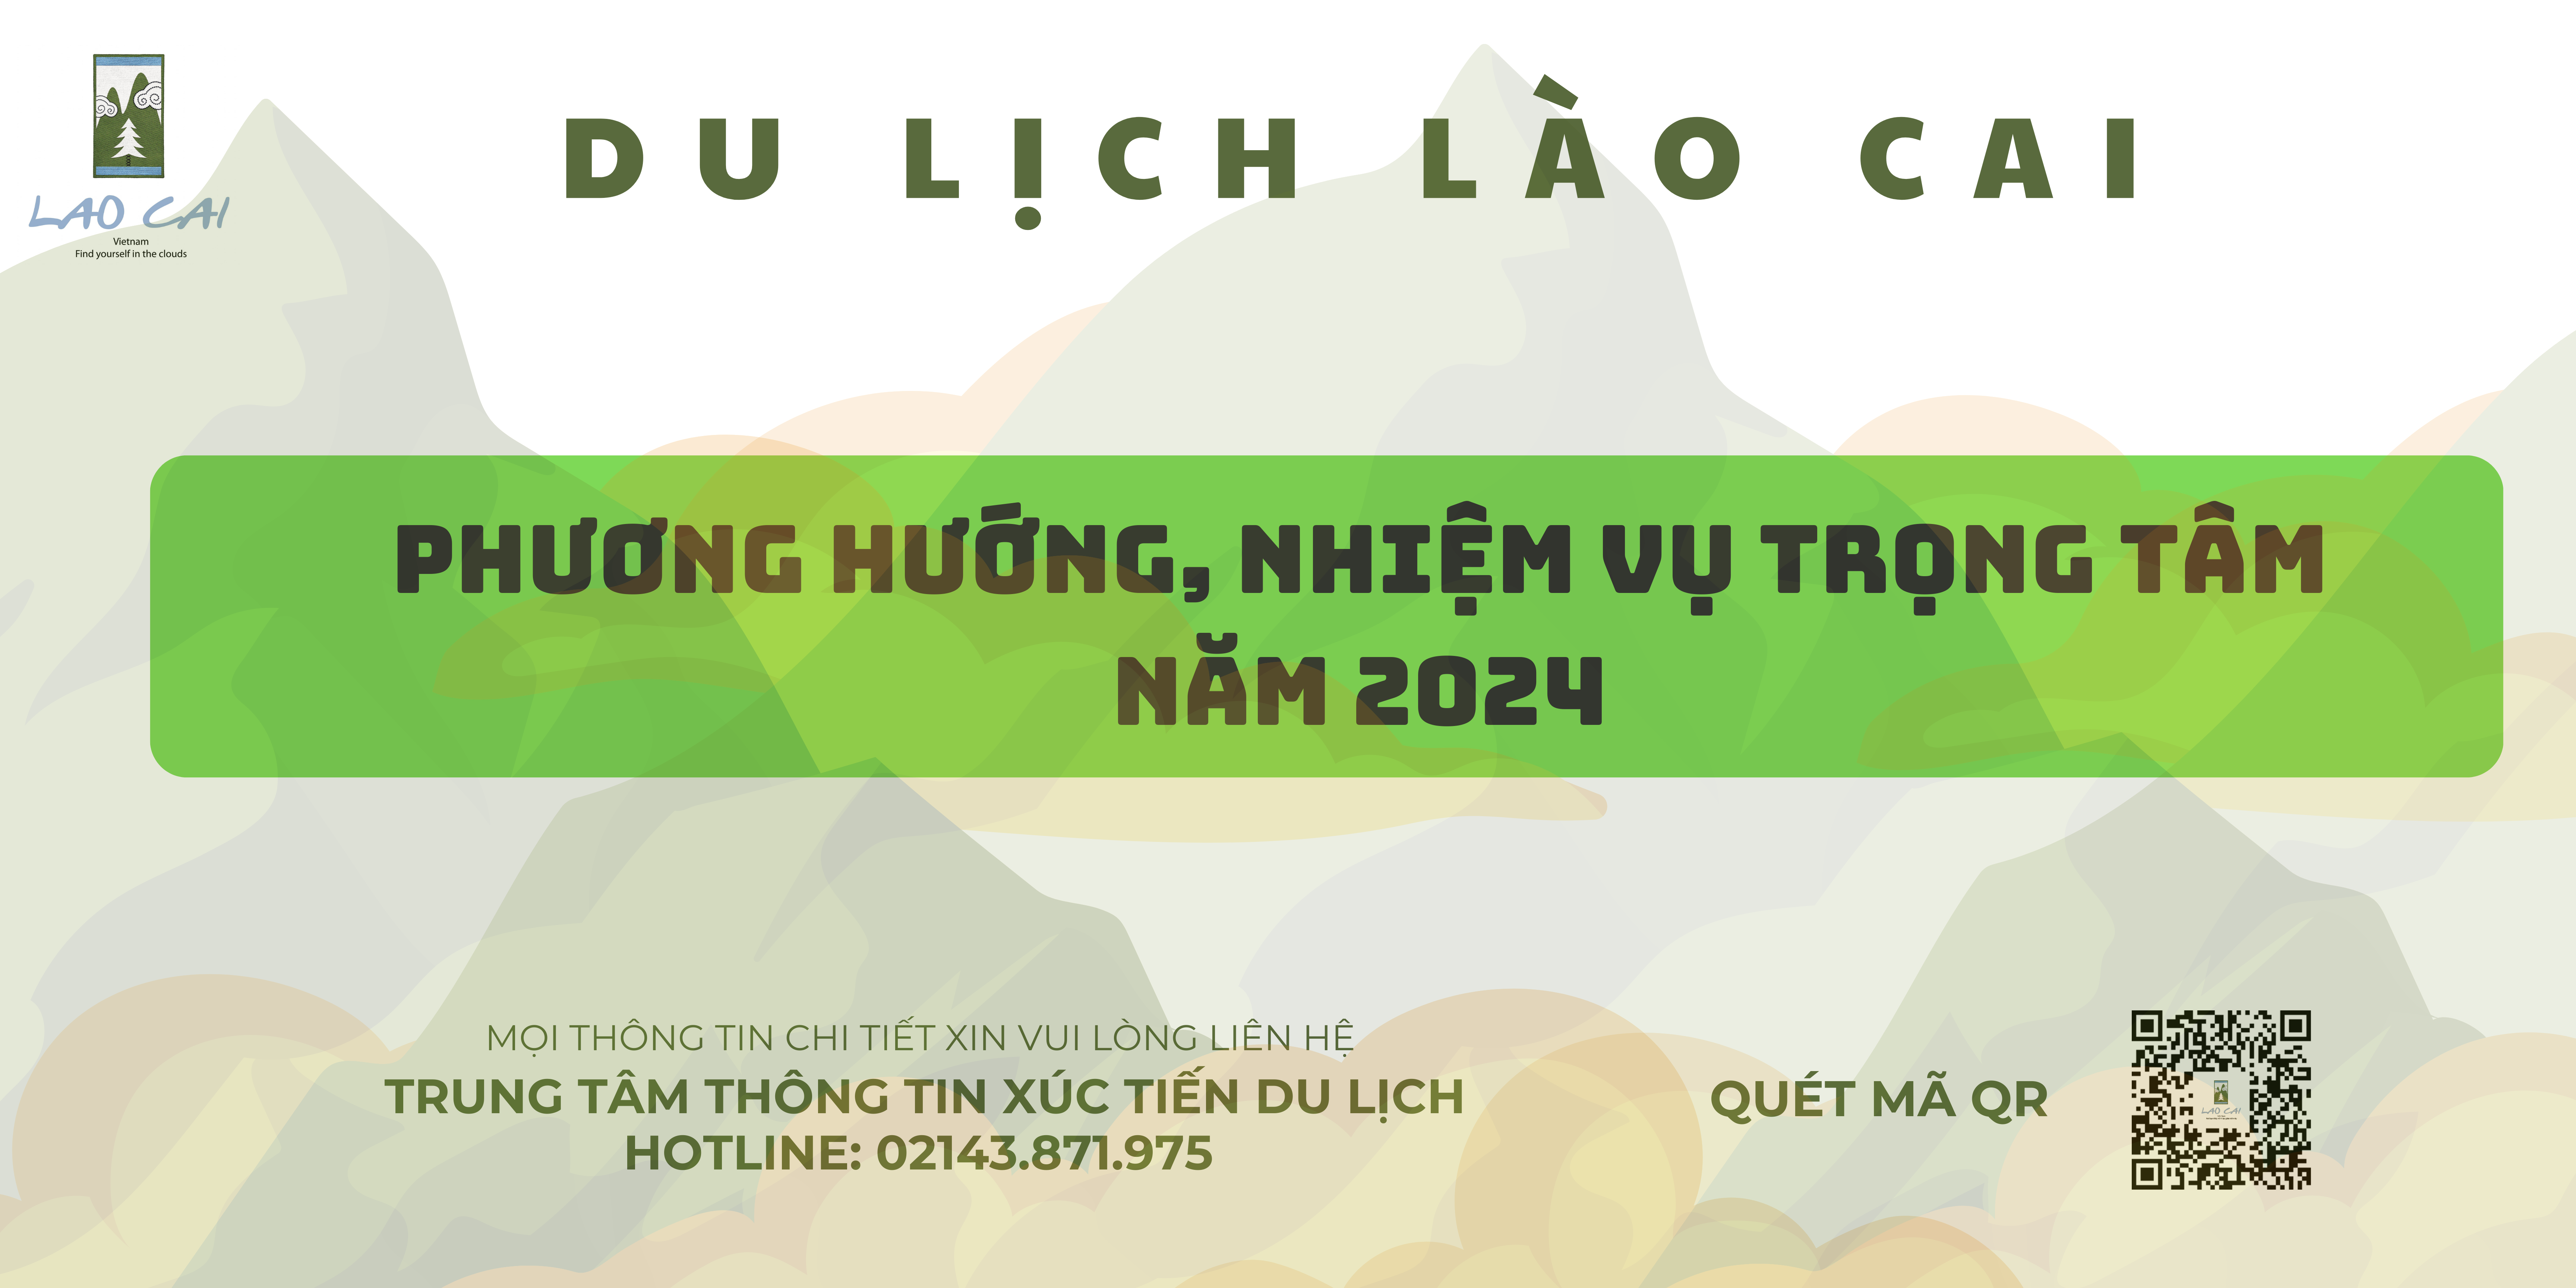 [INFOGRAPHIC] Phương hướng, nhiệm vụ trọng tâm của Du lịch Lào Cai năm 2024 